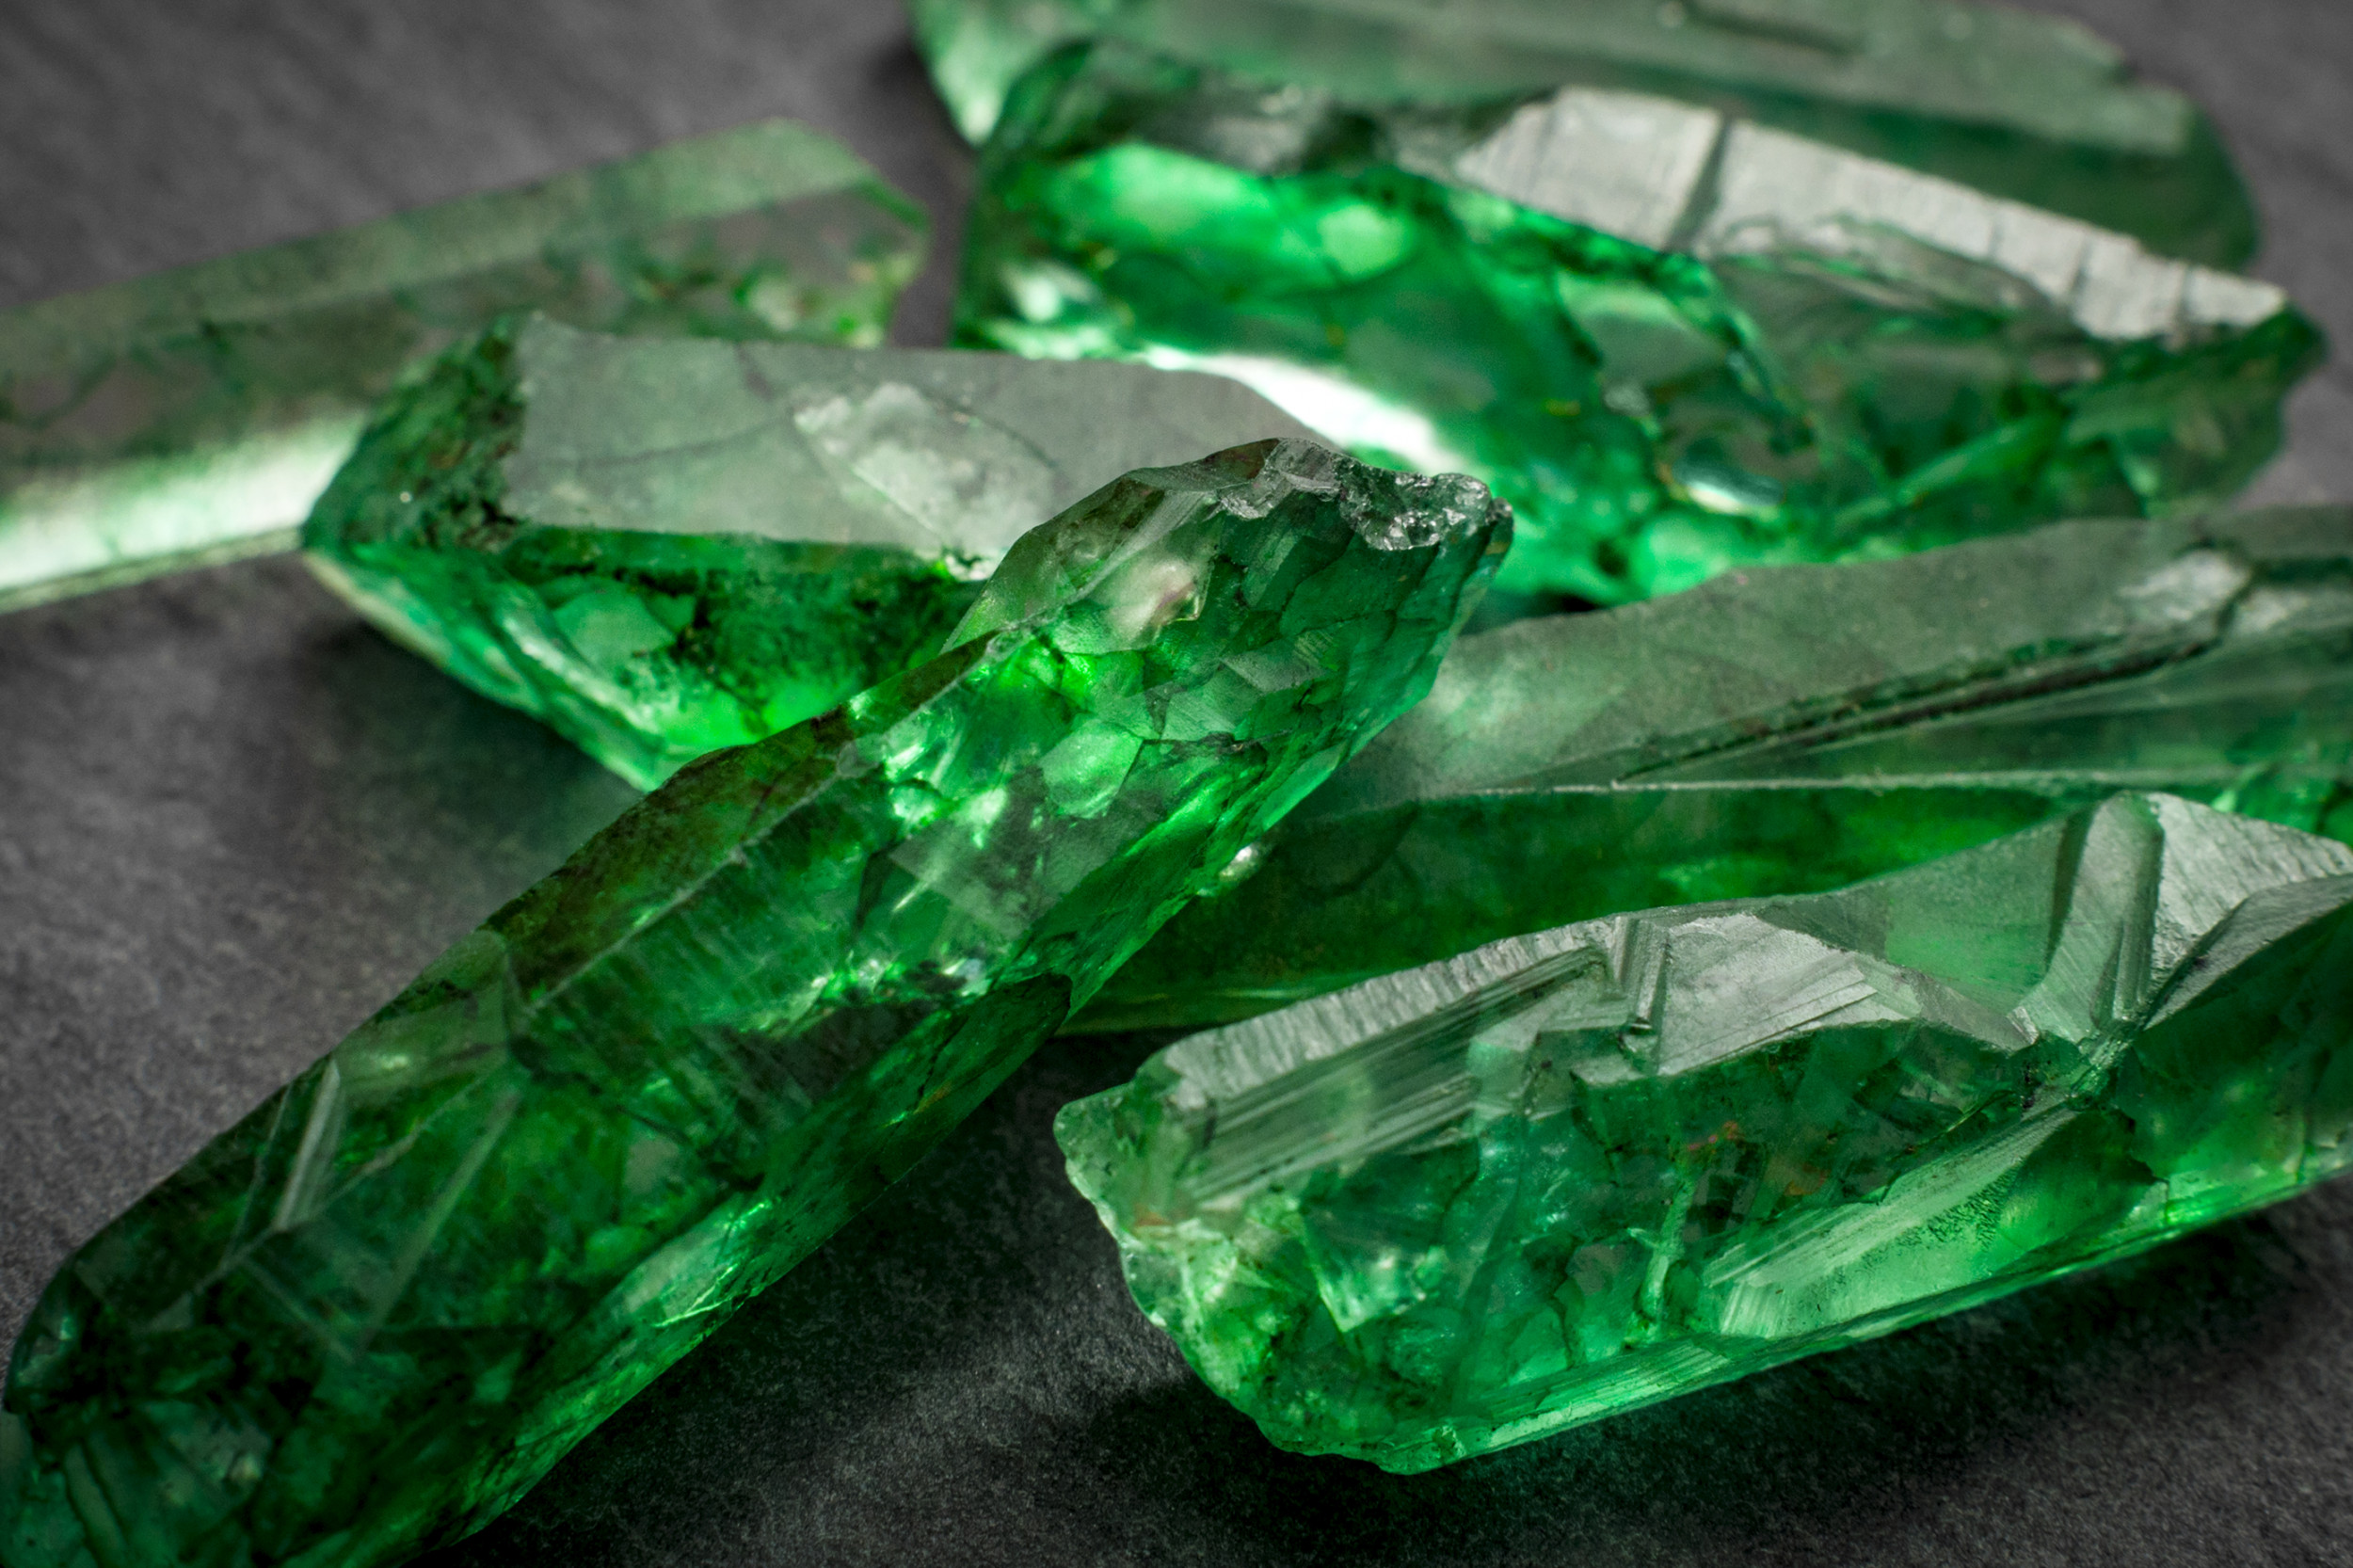 wildfire emeralds uncut